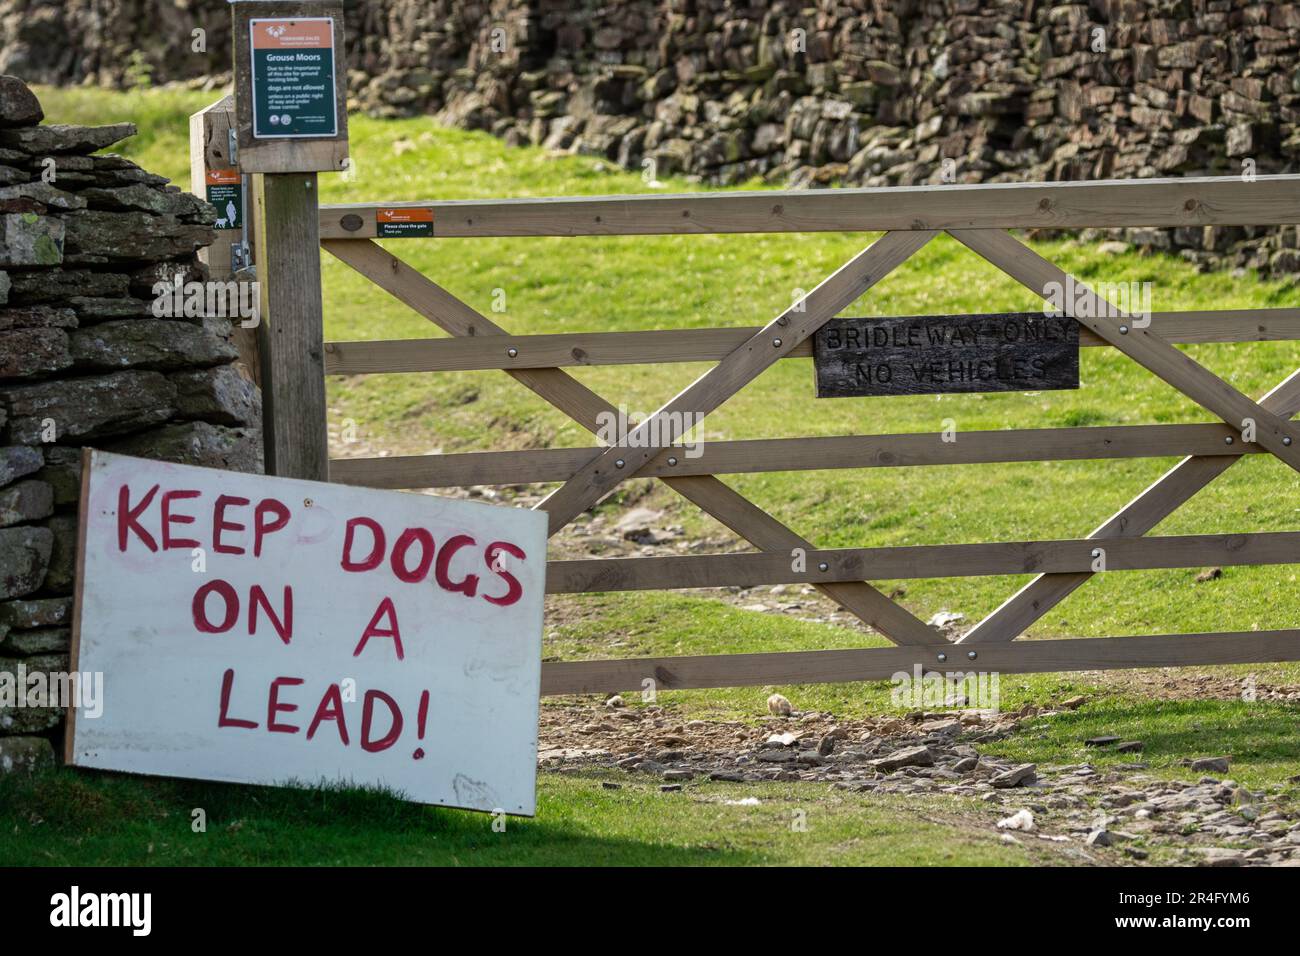 Tieni i cani su un cartello con la scritta "Lead" sul pubic Right of Way nello Yorkshire Dales, Regno Unito, per proteggere uccelli e agnelli che nidificano a terra in Springtime. Horizont Foto Stock